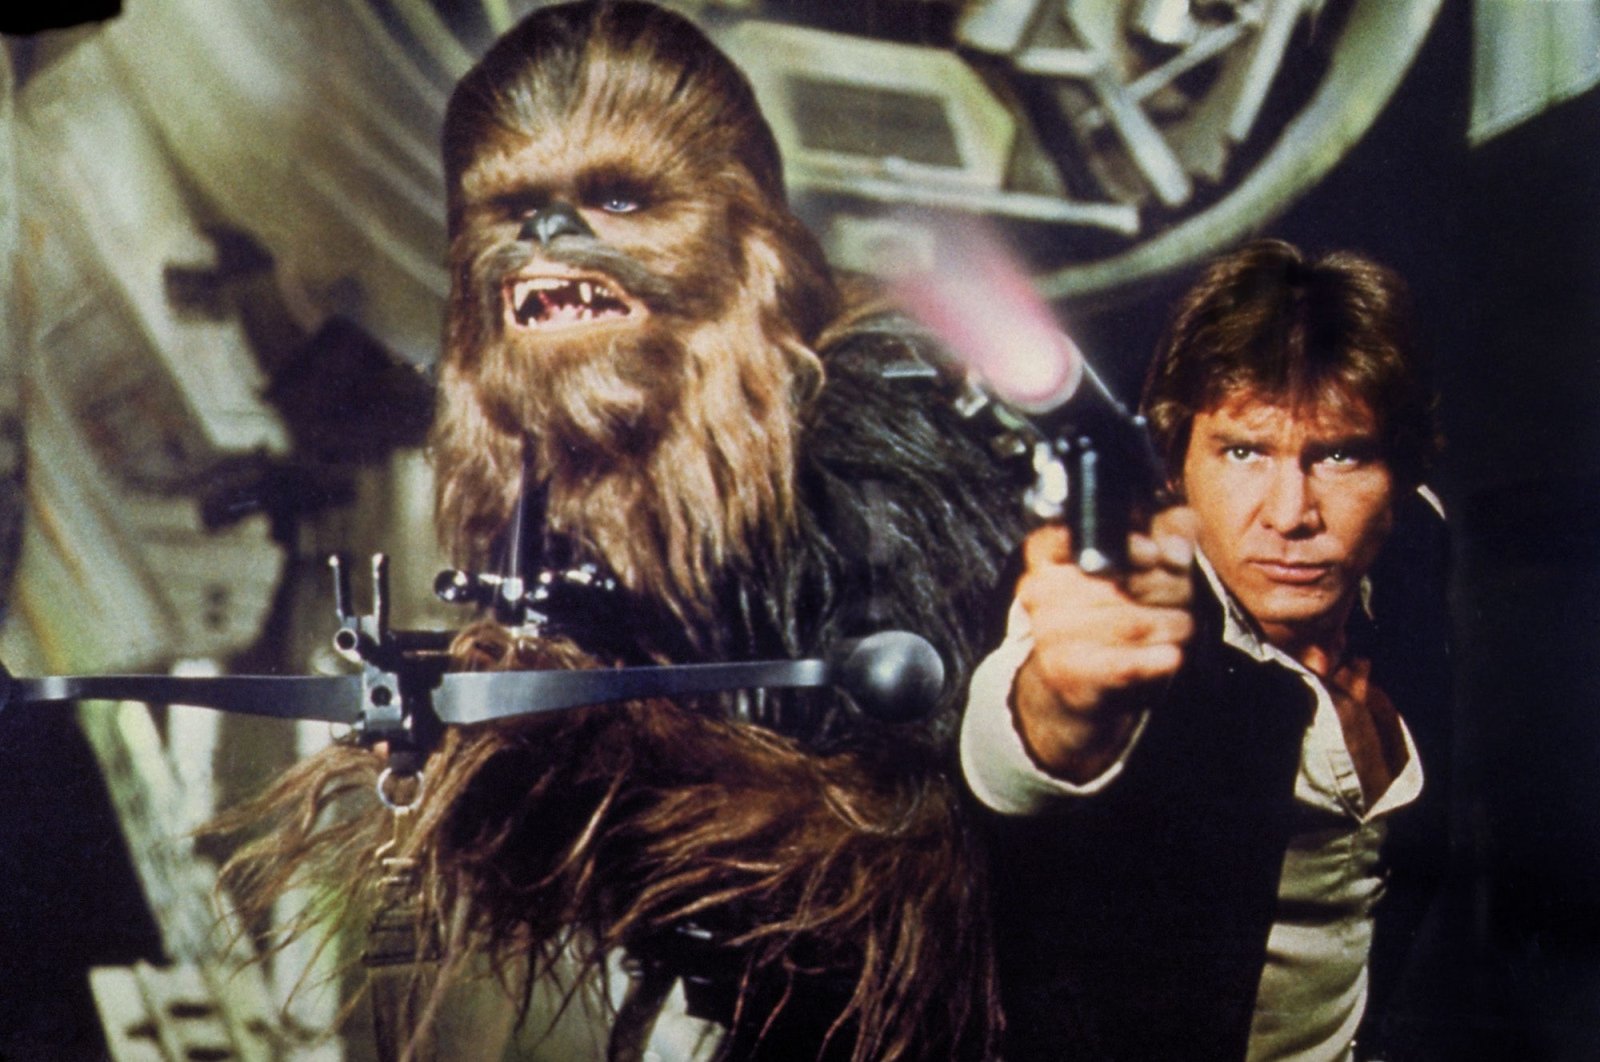 Pistol prop yang digunakan oleh Han Solo di “Star Wars” terjual lebih dari  juta